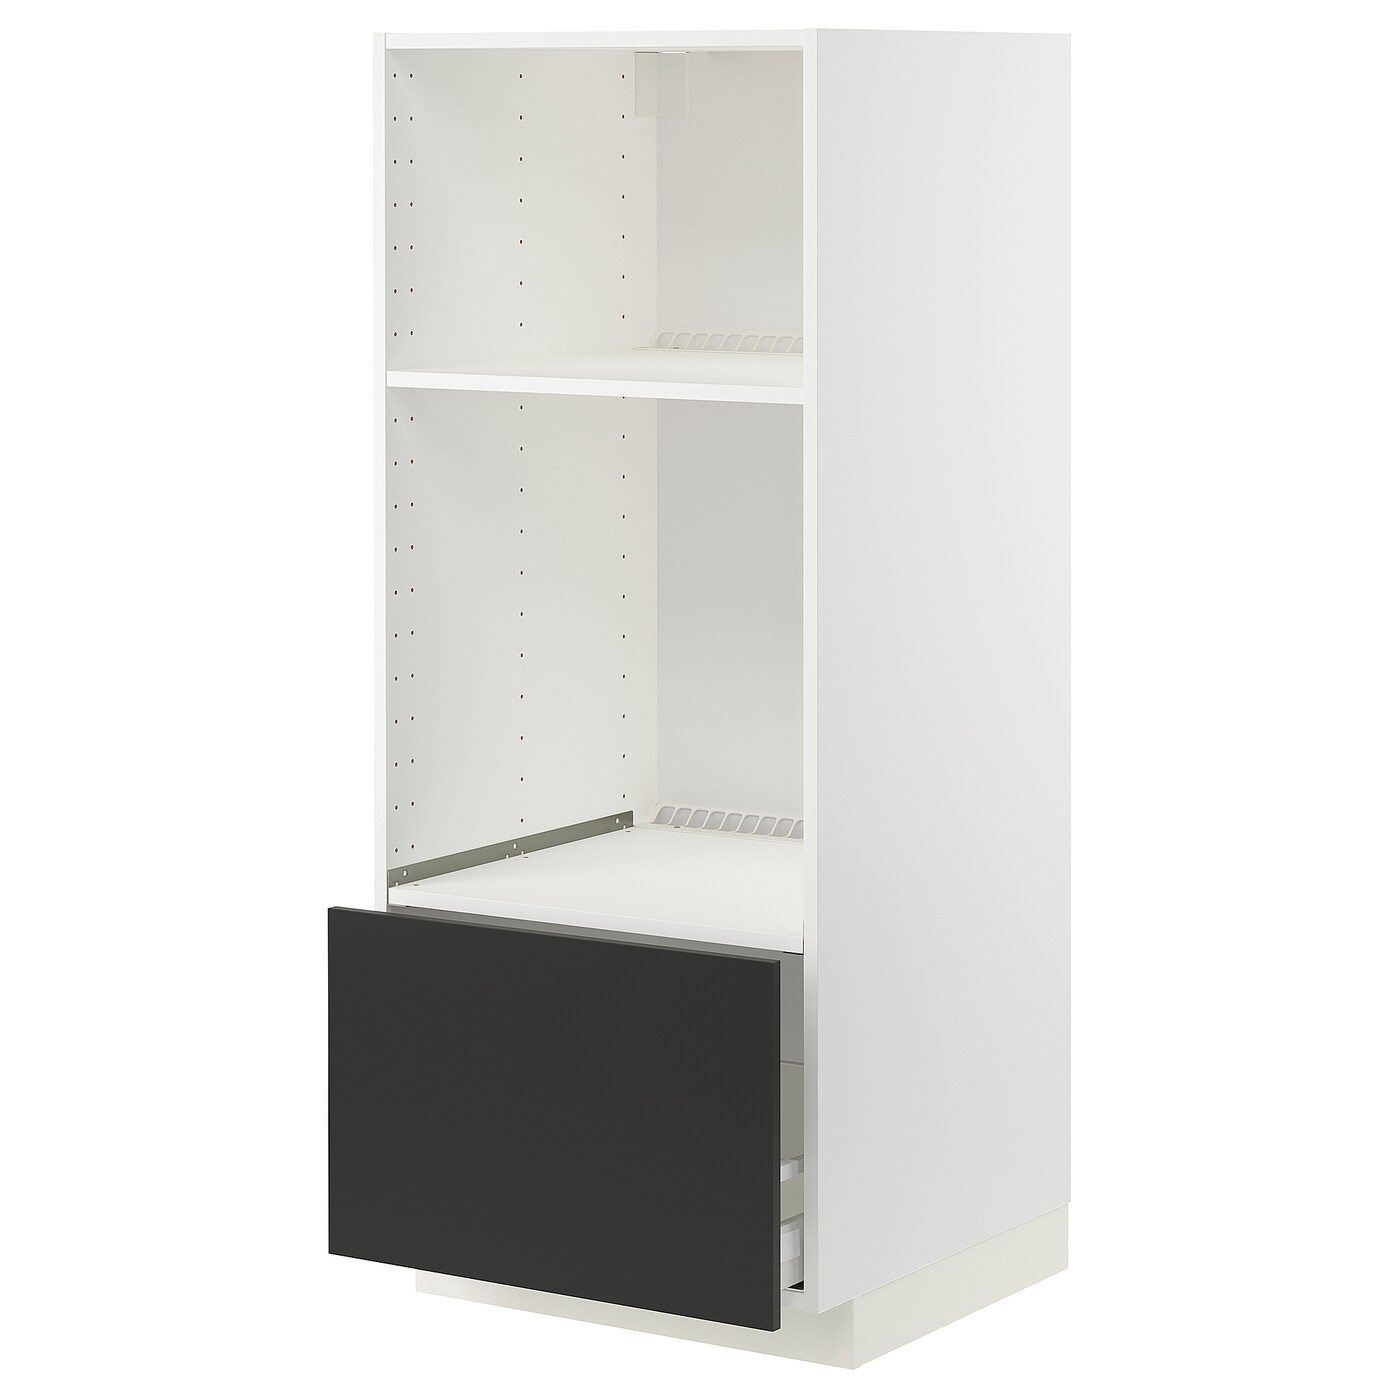 Напольный шкаф  - IKEA METOD MAXIMERA, 148x61,6x60см, белый/черный, МЕТОД МАКСИМЕРА ИКЕА